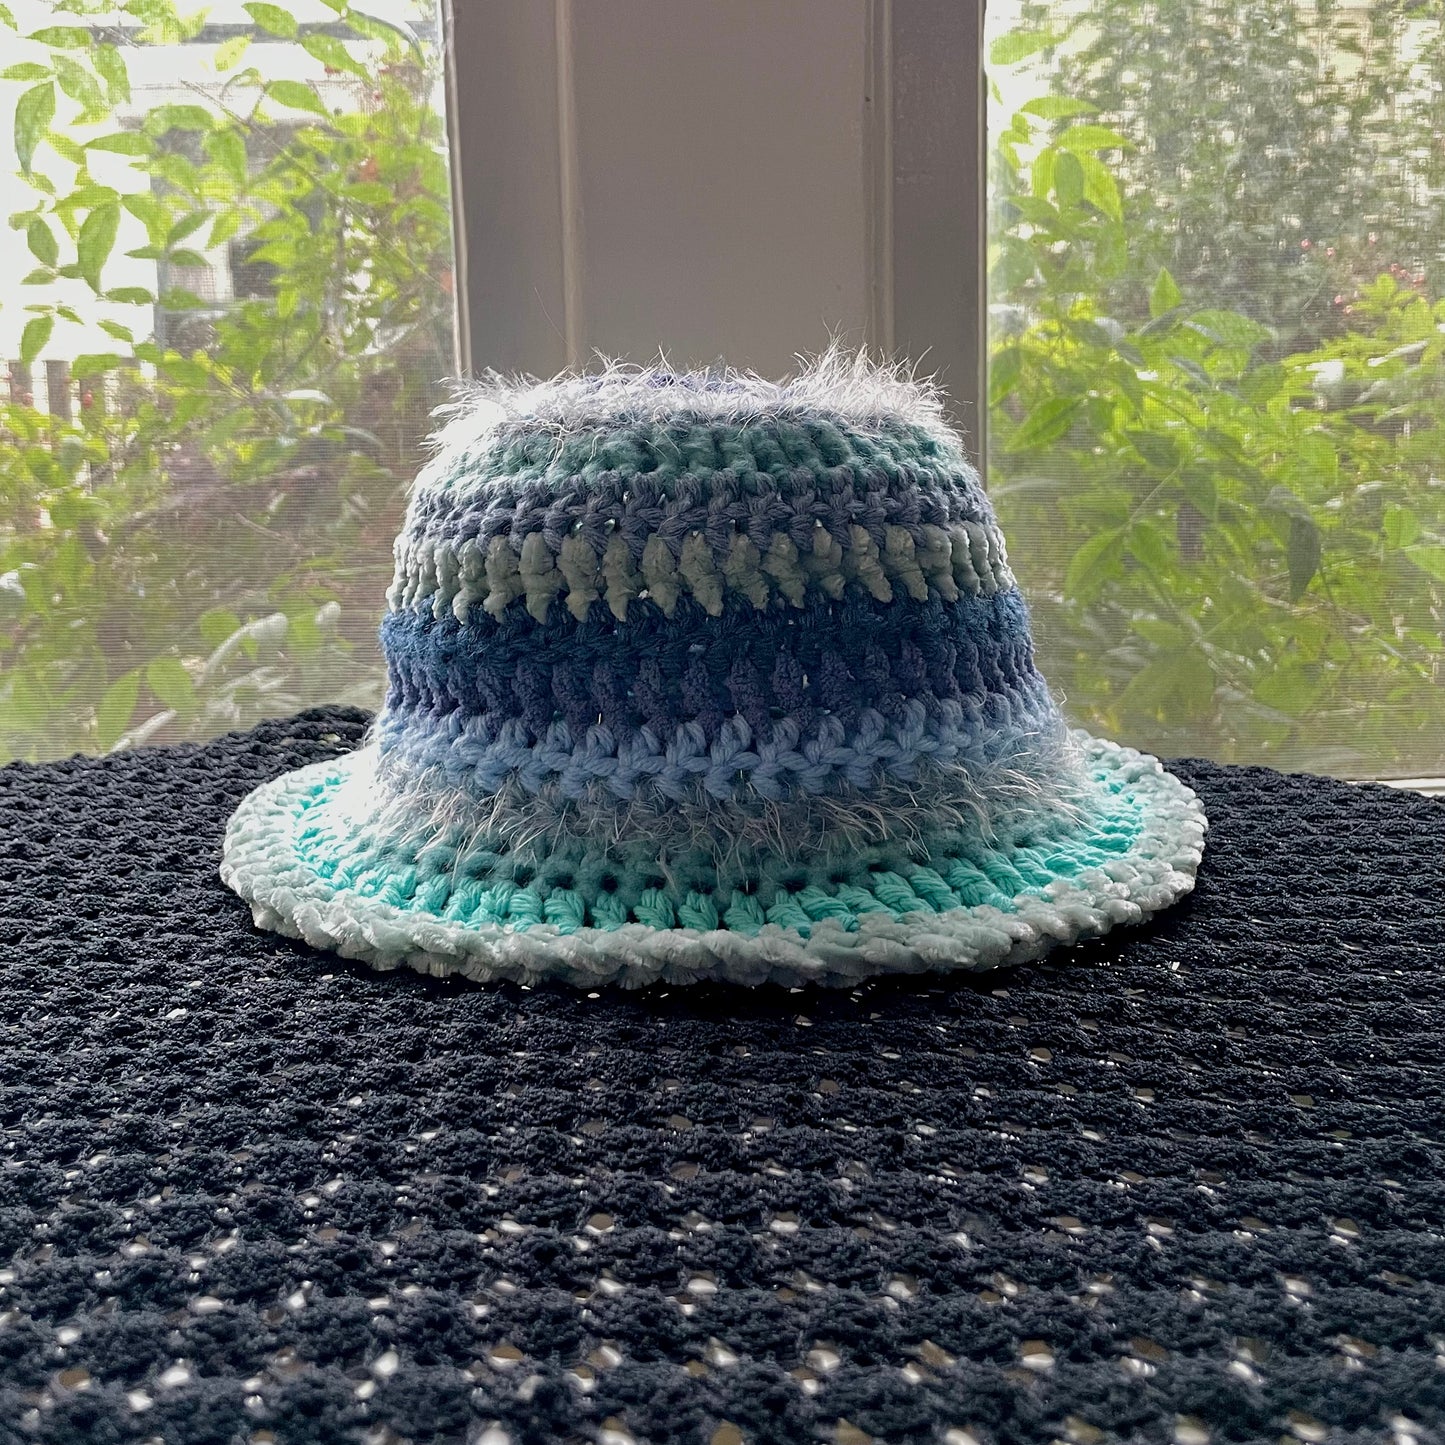 Oceana Bucket Hat